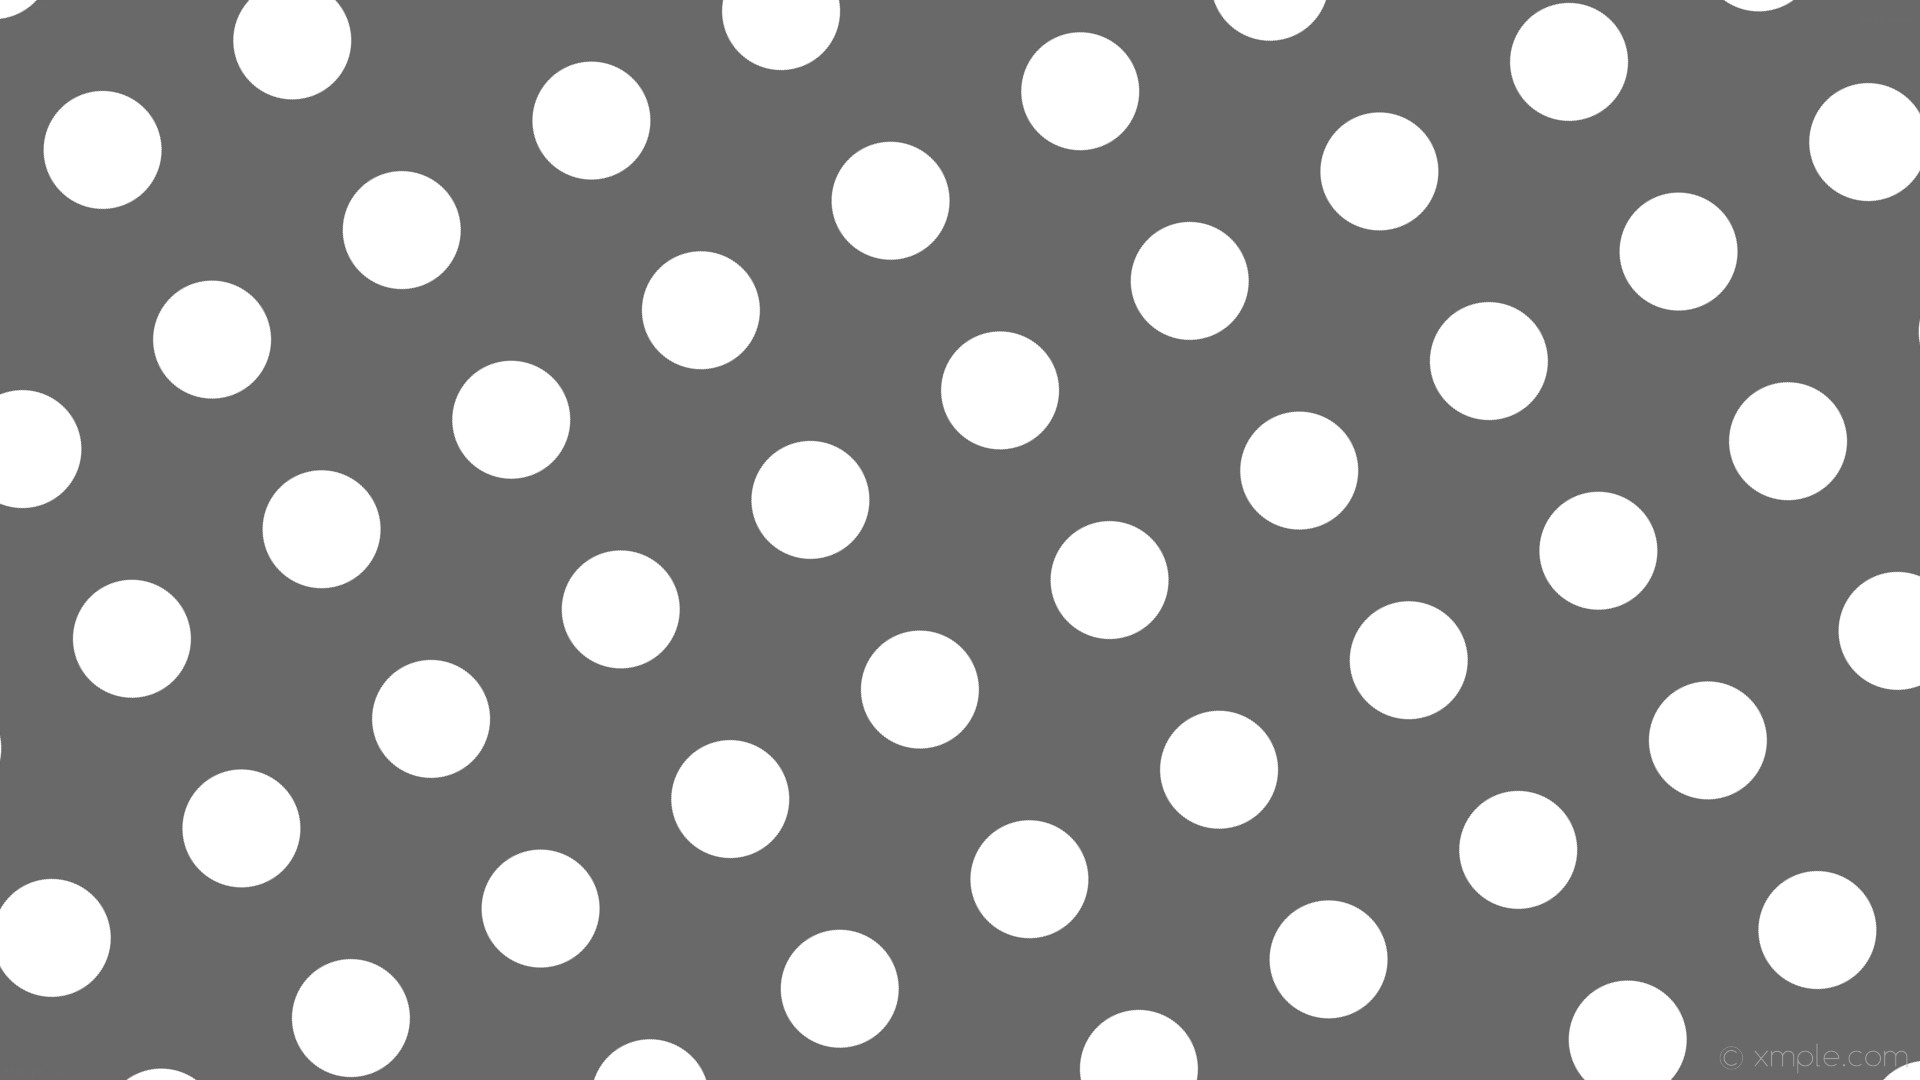 1920x1080 wallpaper polka dots grey white spots dim gray #696969 #ffffff 30Â° 118px  219px